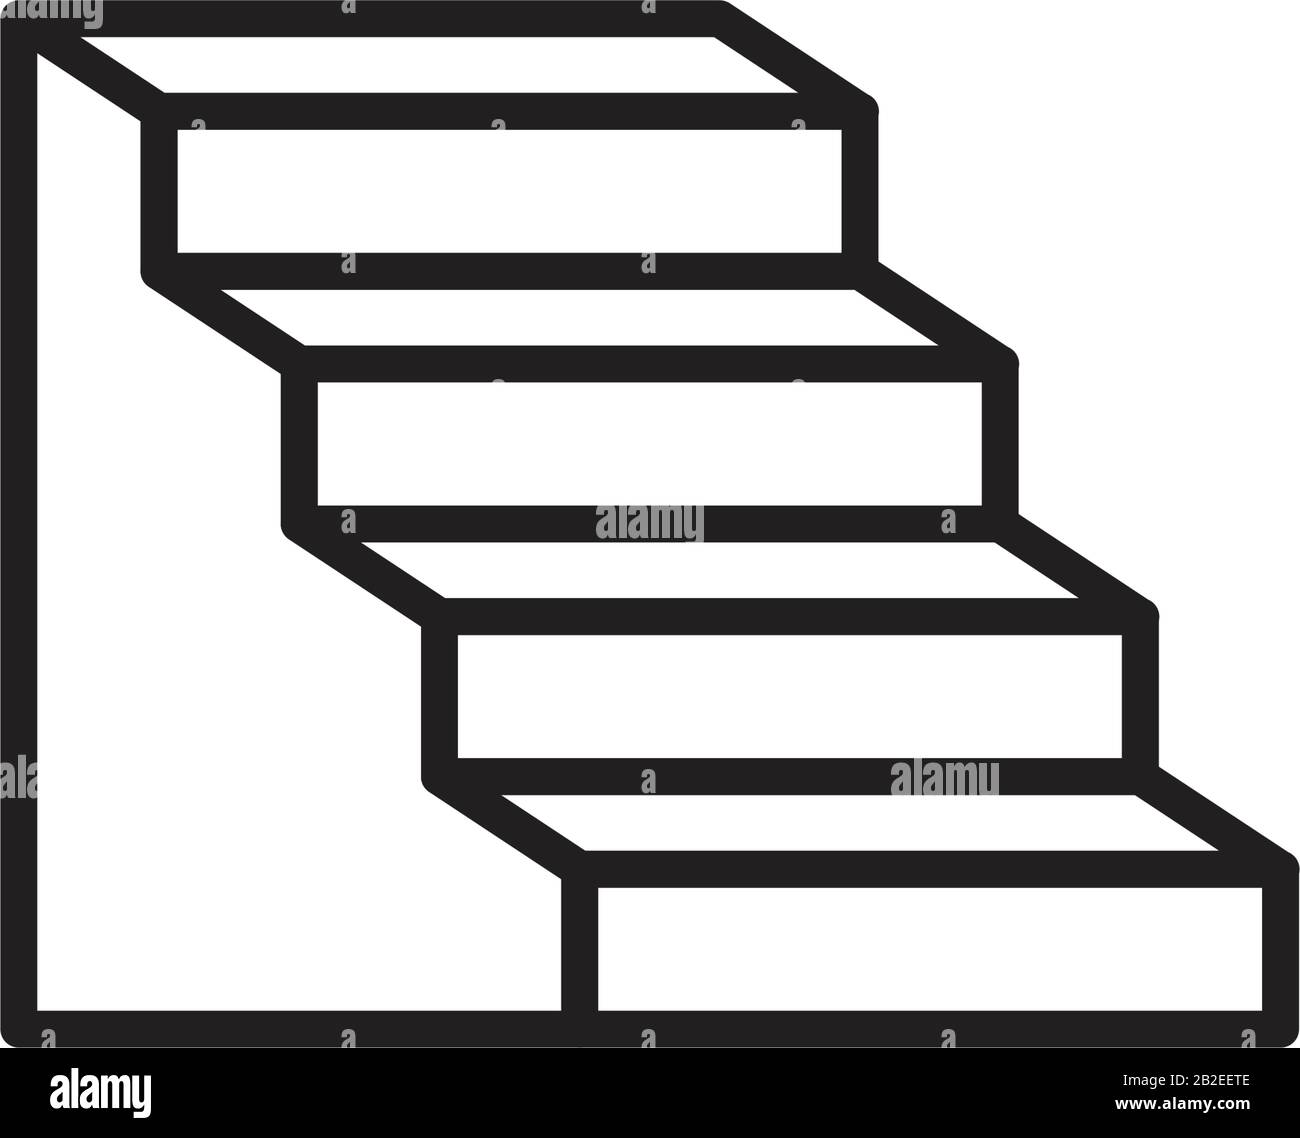 Stairway vectors immagini e fotografie stock ad alta risoluzione - Alamy